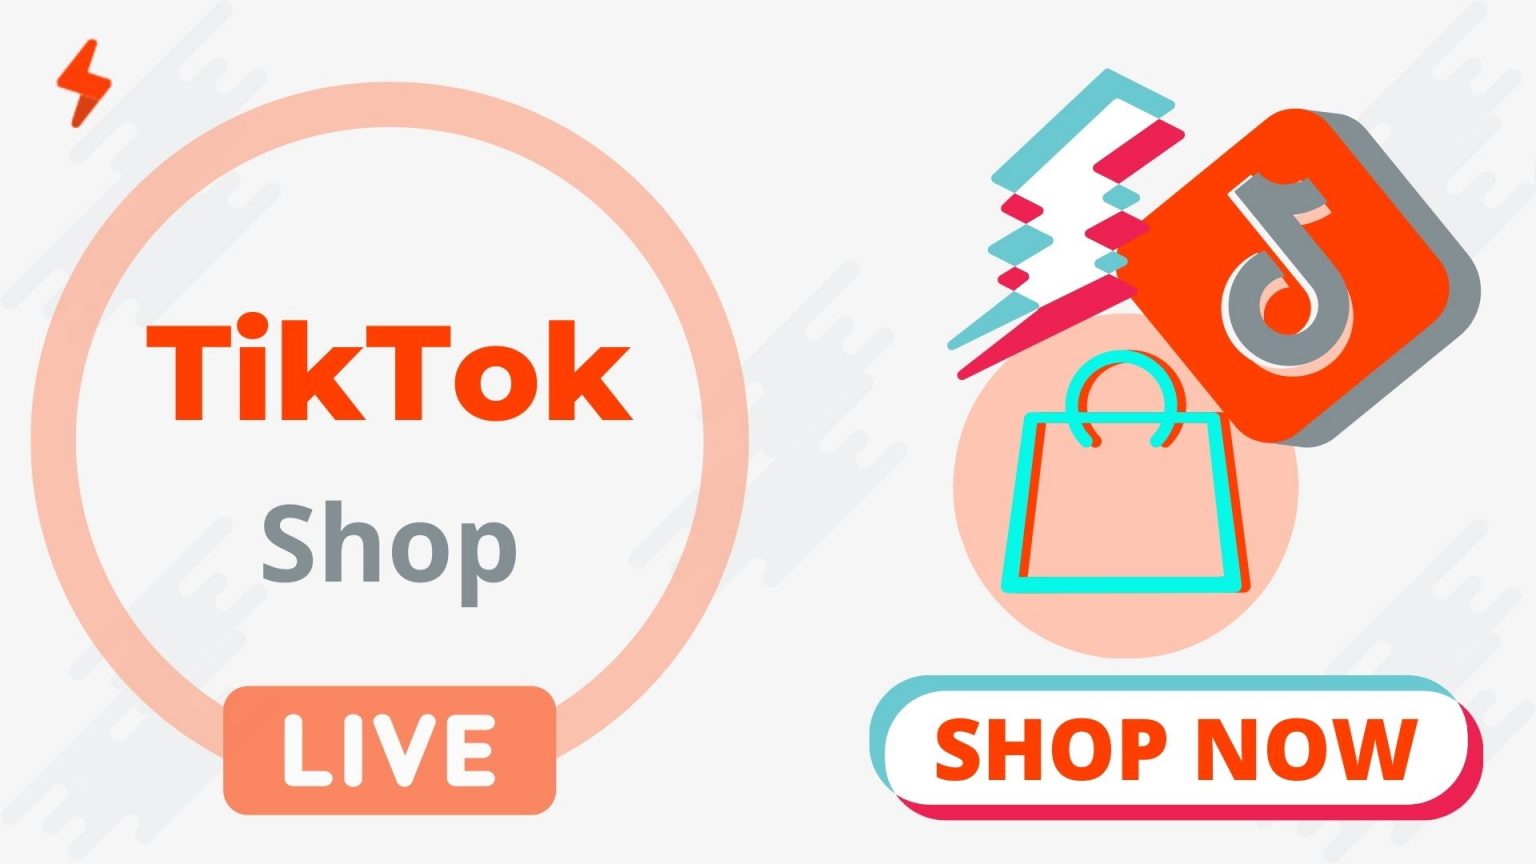 เปิดร้านขายของใน TikTok ด้วยติ๊กต๊อก shop